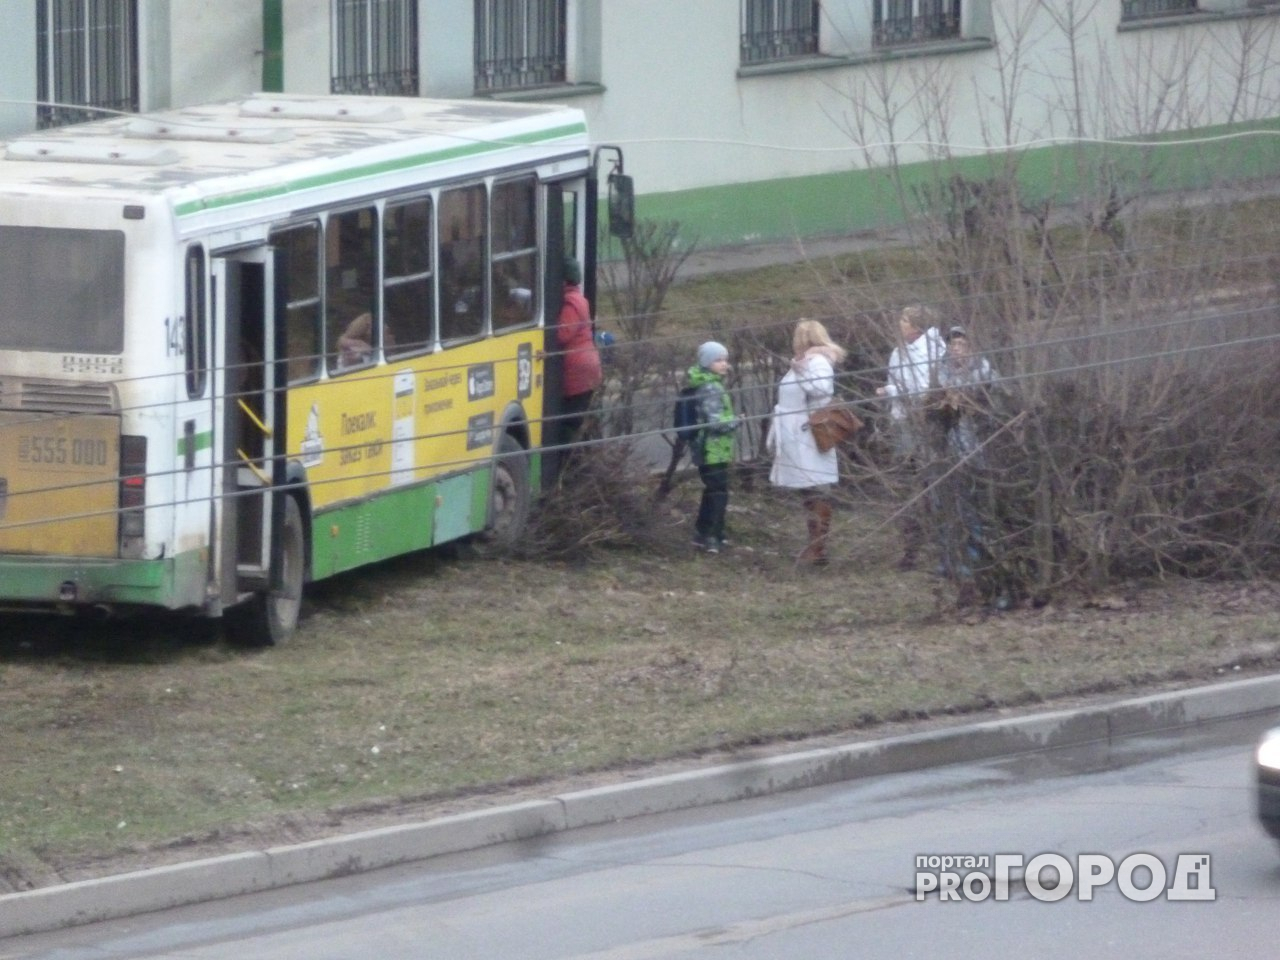 В Ярославской области автобус улетел на тротуар: люди бросились на помощь